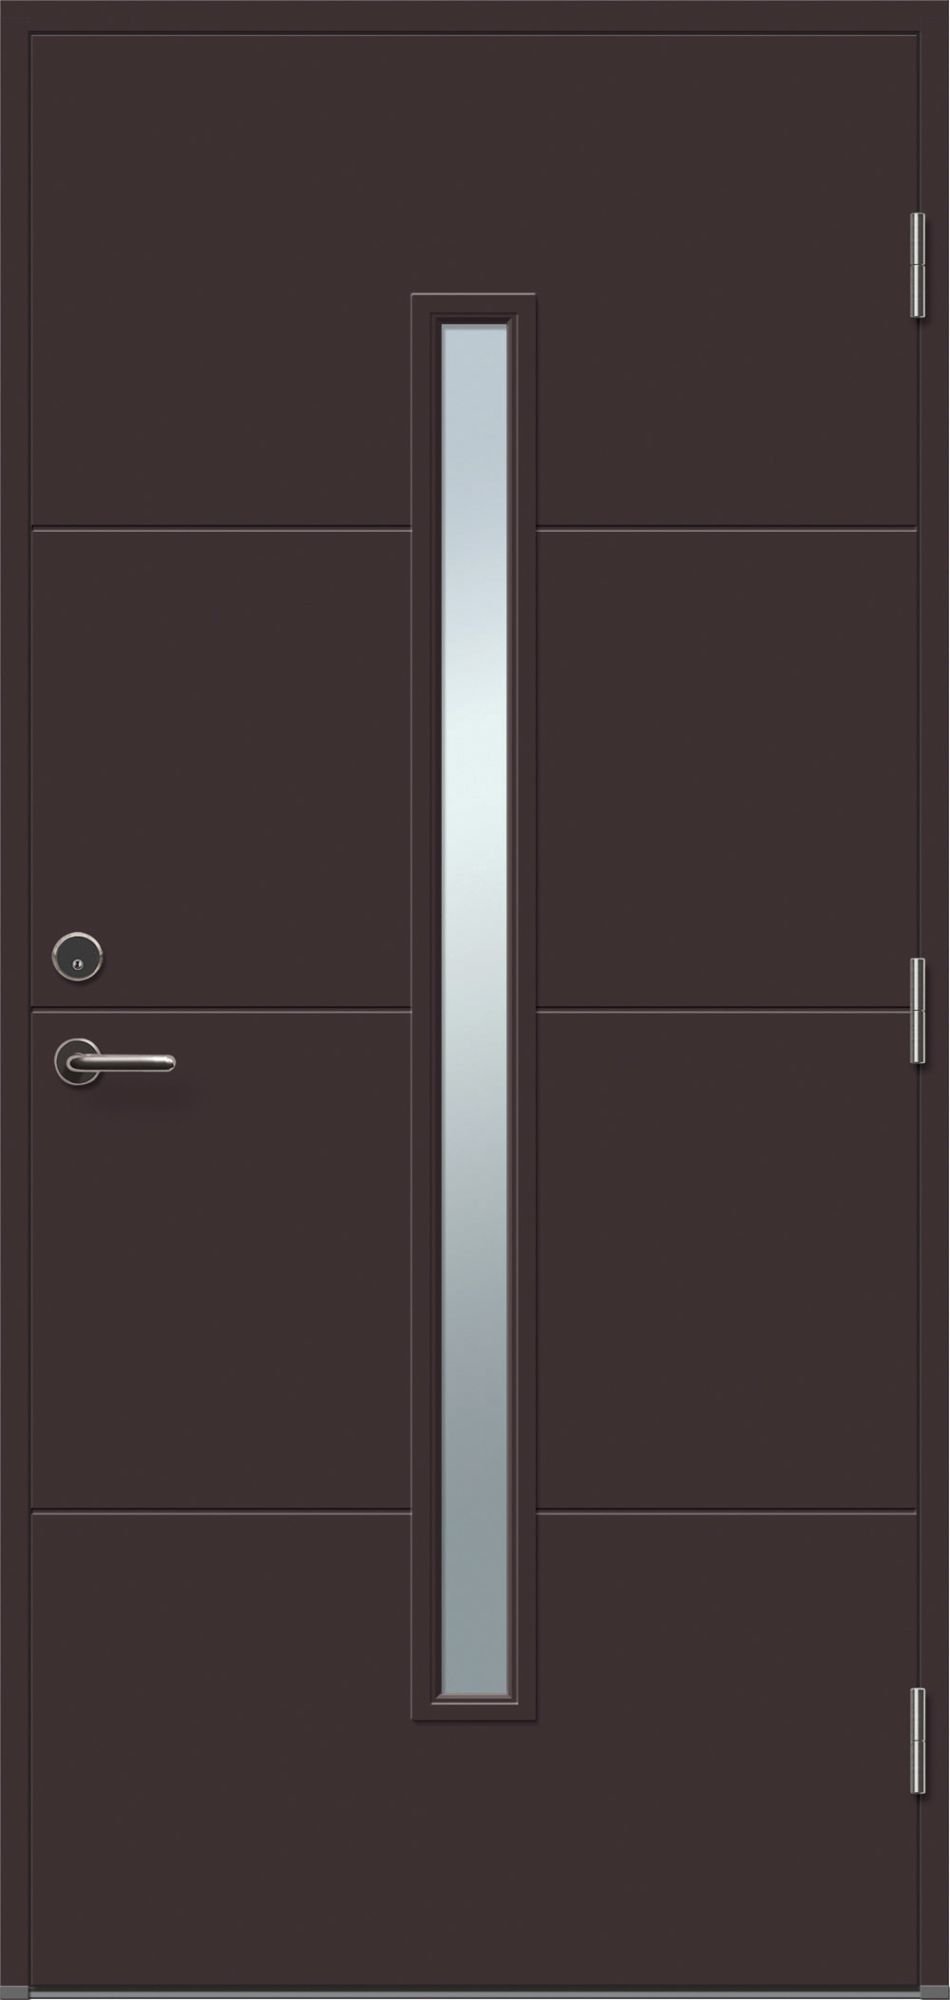 Lauko durys VILJANDI STORO1R T1, rudos sp., 890 x 2088 mm, dešinė - 1